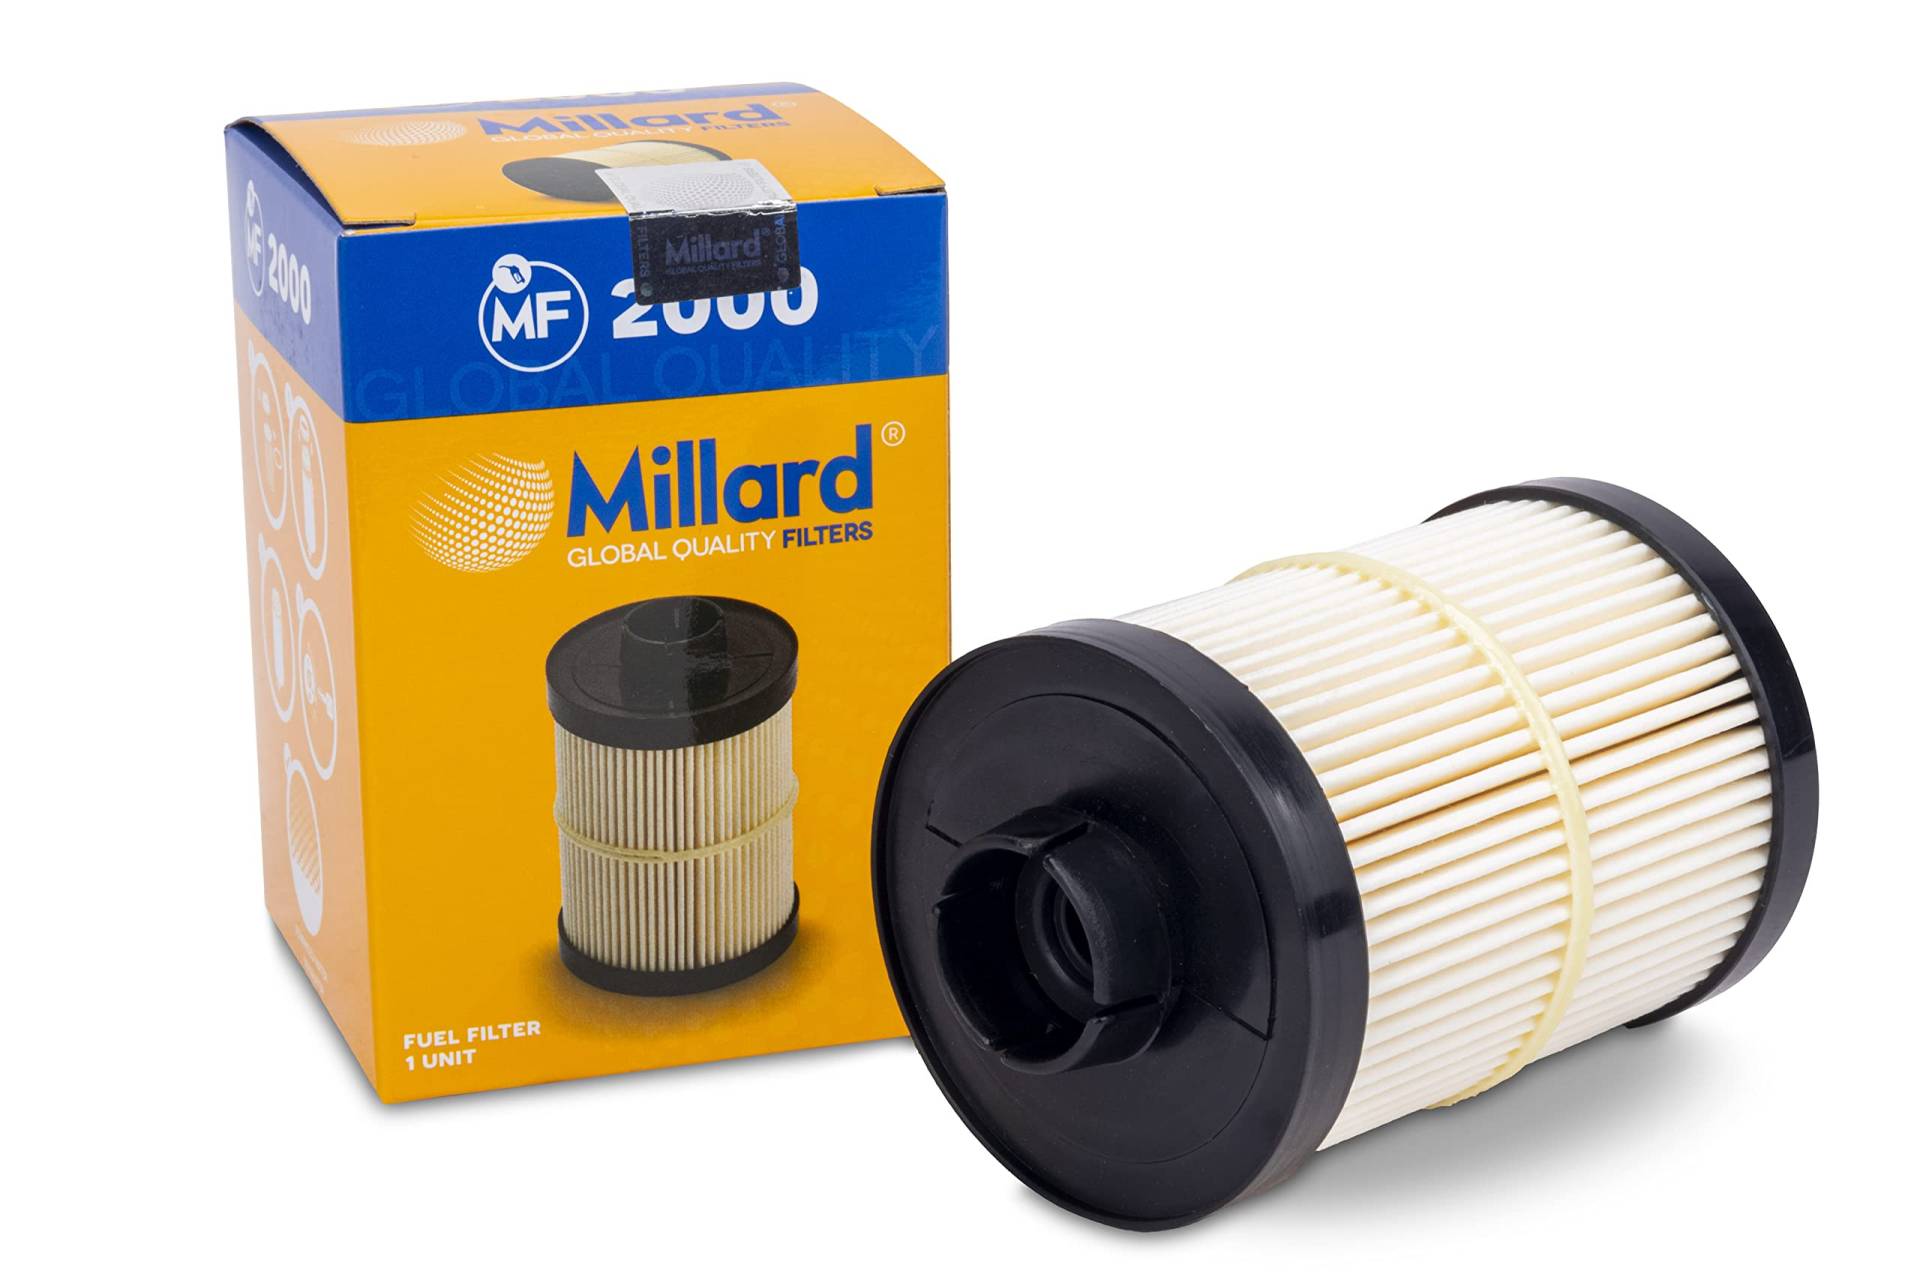 Millard Filters Auto-Kraftstofffilter Millard MF2000 97x68x12 mm Global Quality von Millard Filters